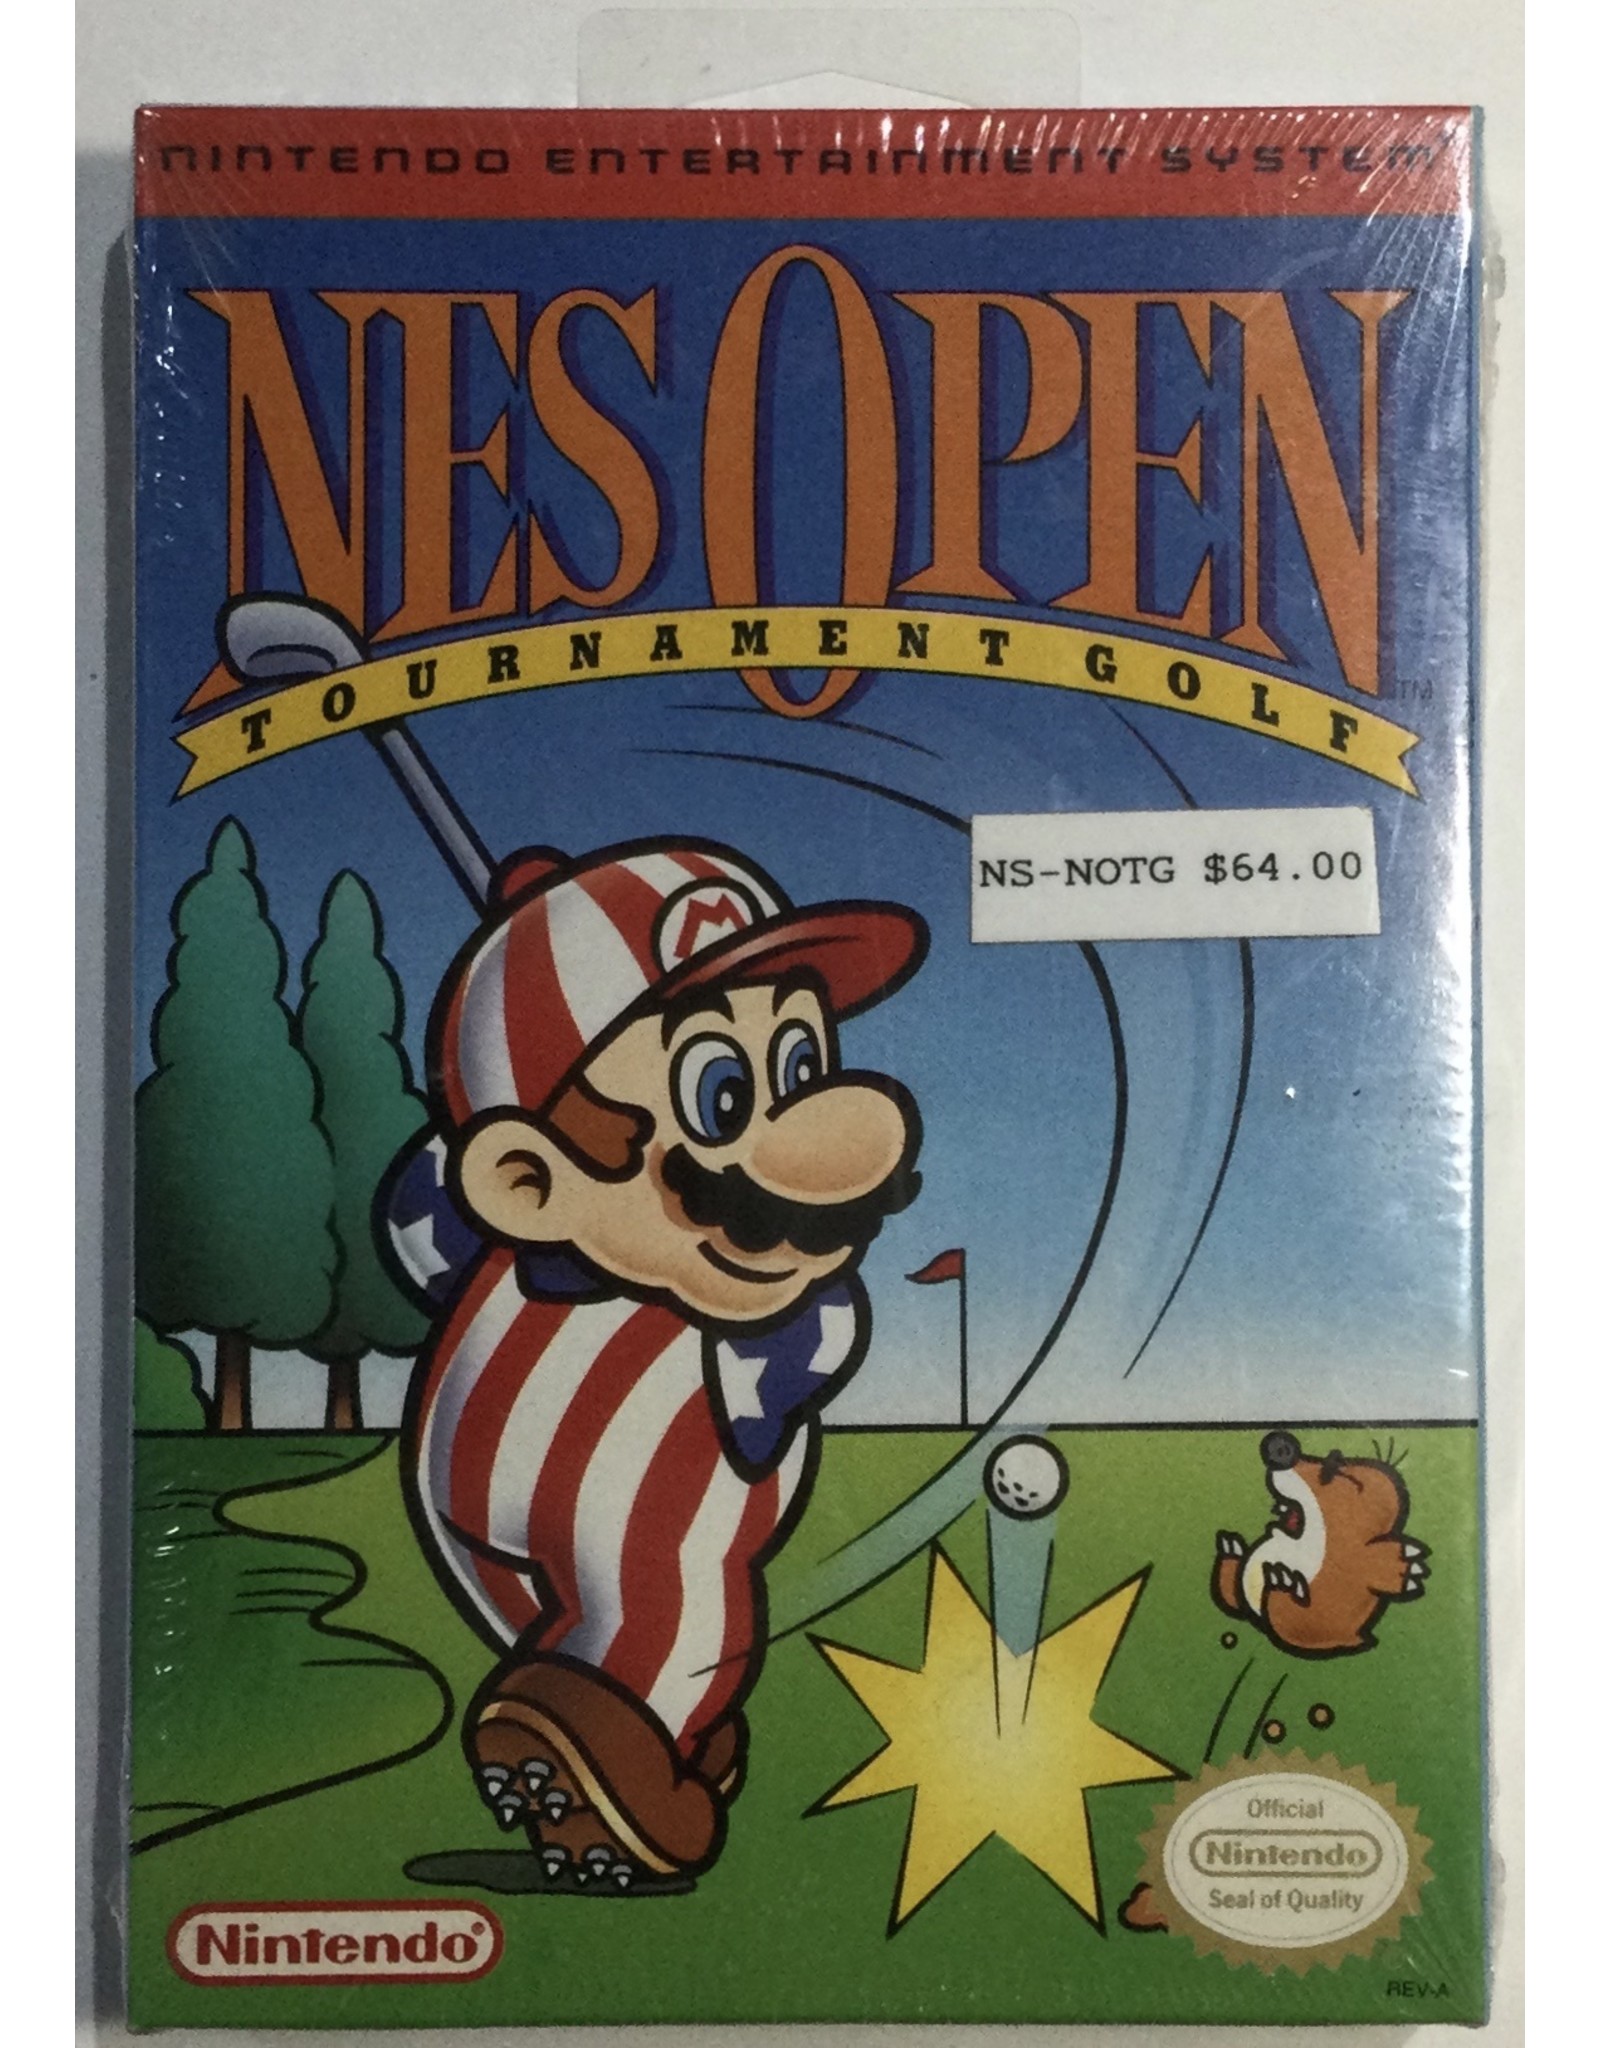 Nintendo NES Open Tournament Golf for Nintendo Entertainment System (NES) - NIB